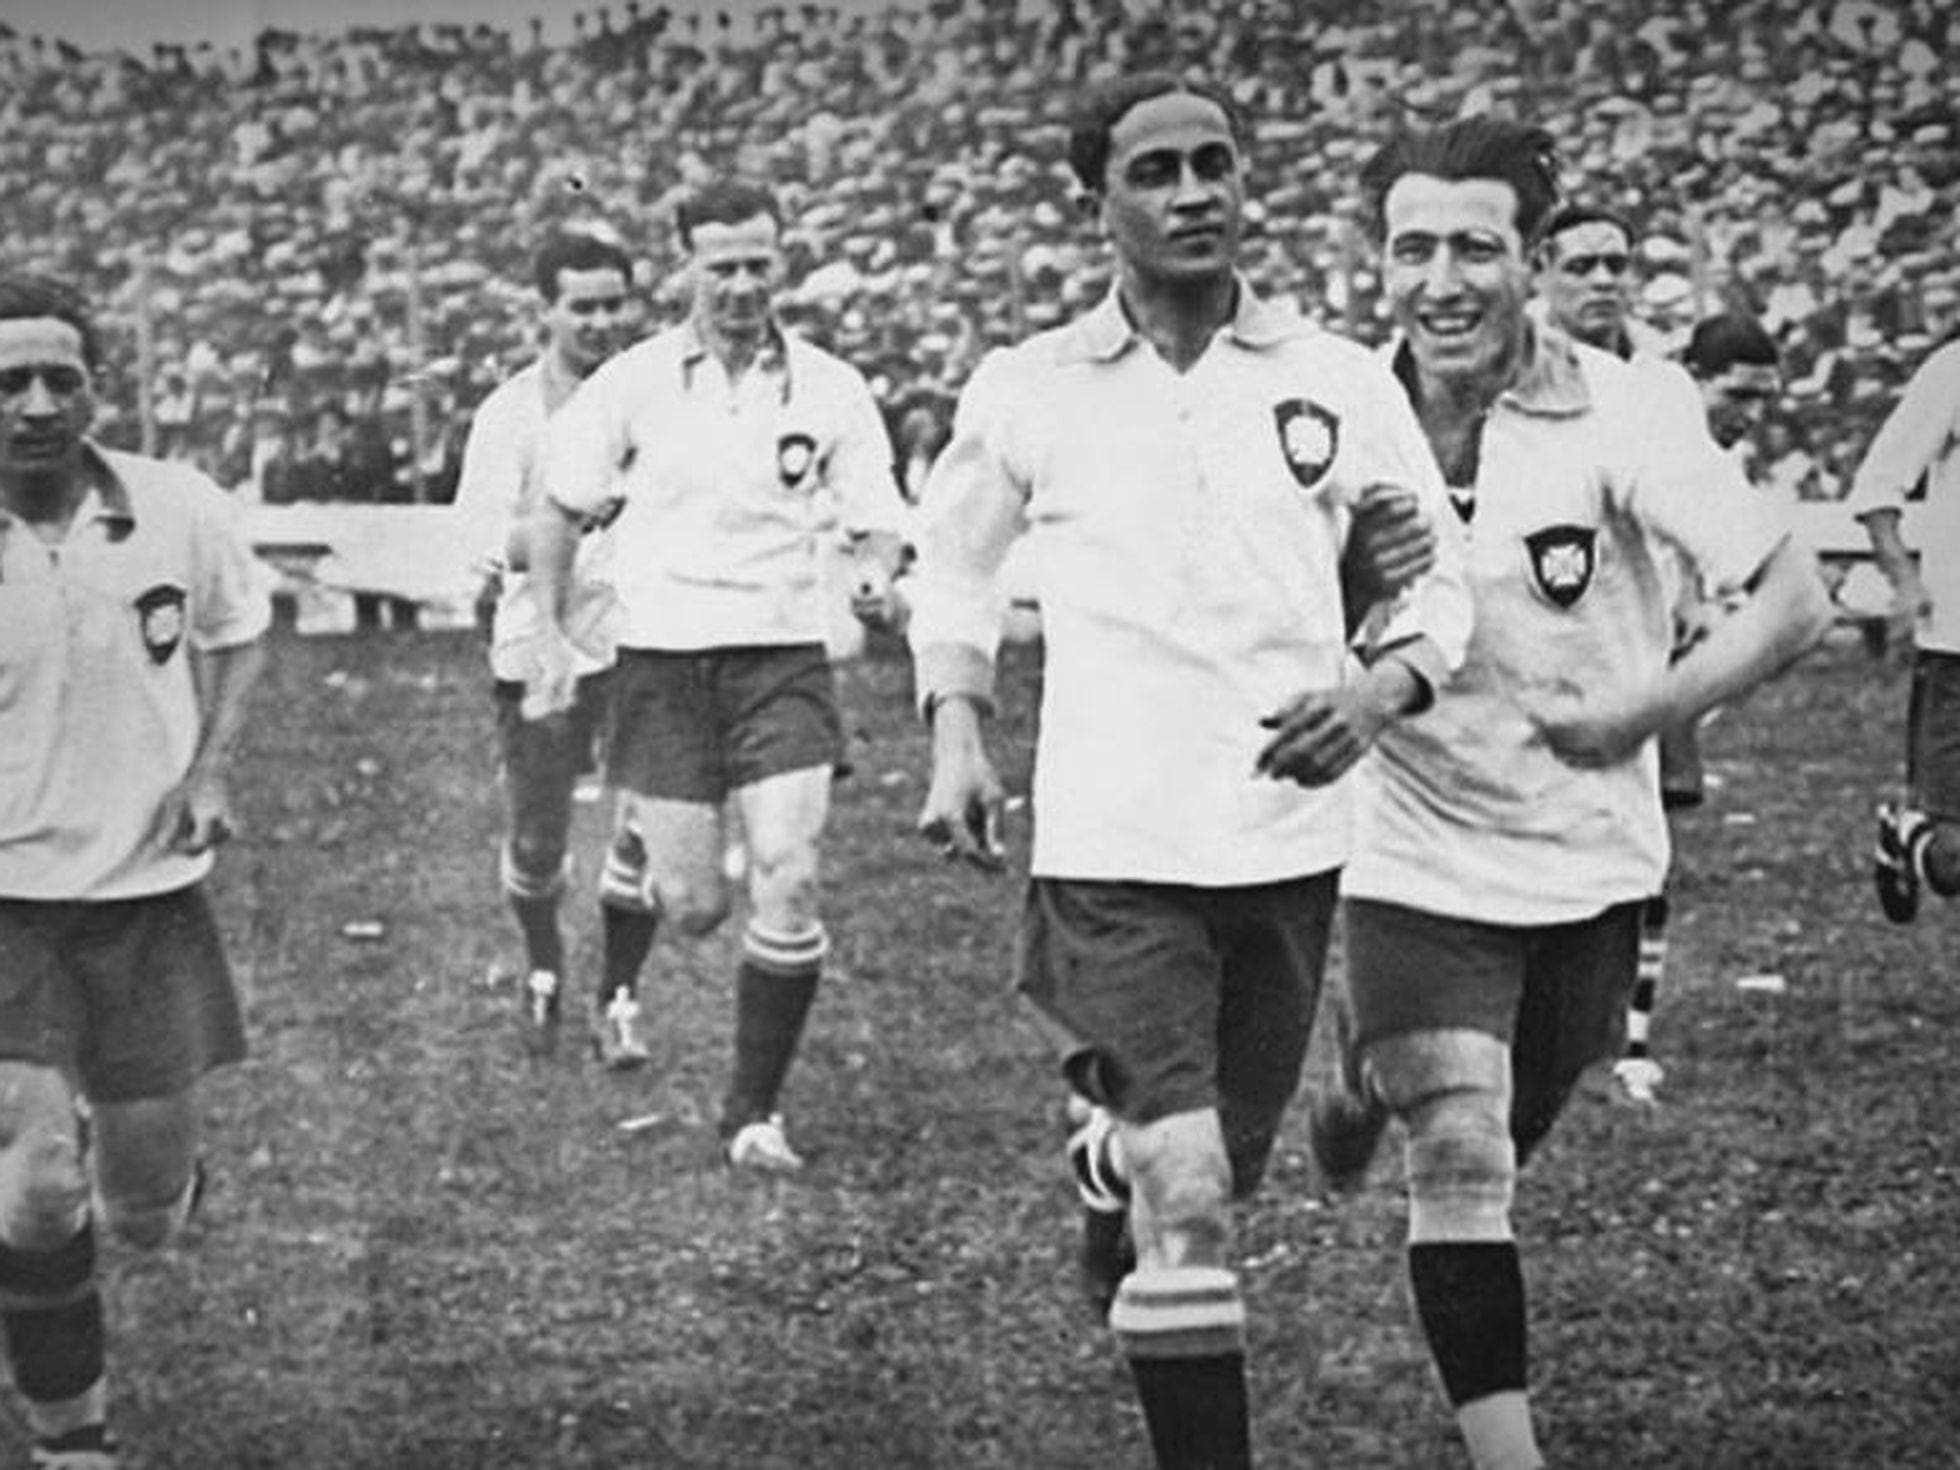 1950: Relatório oficial da CBD sobre a 1ª Copa do Mundo no Brasil